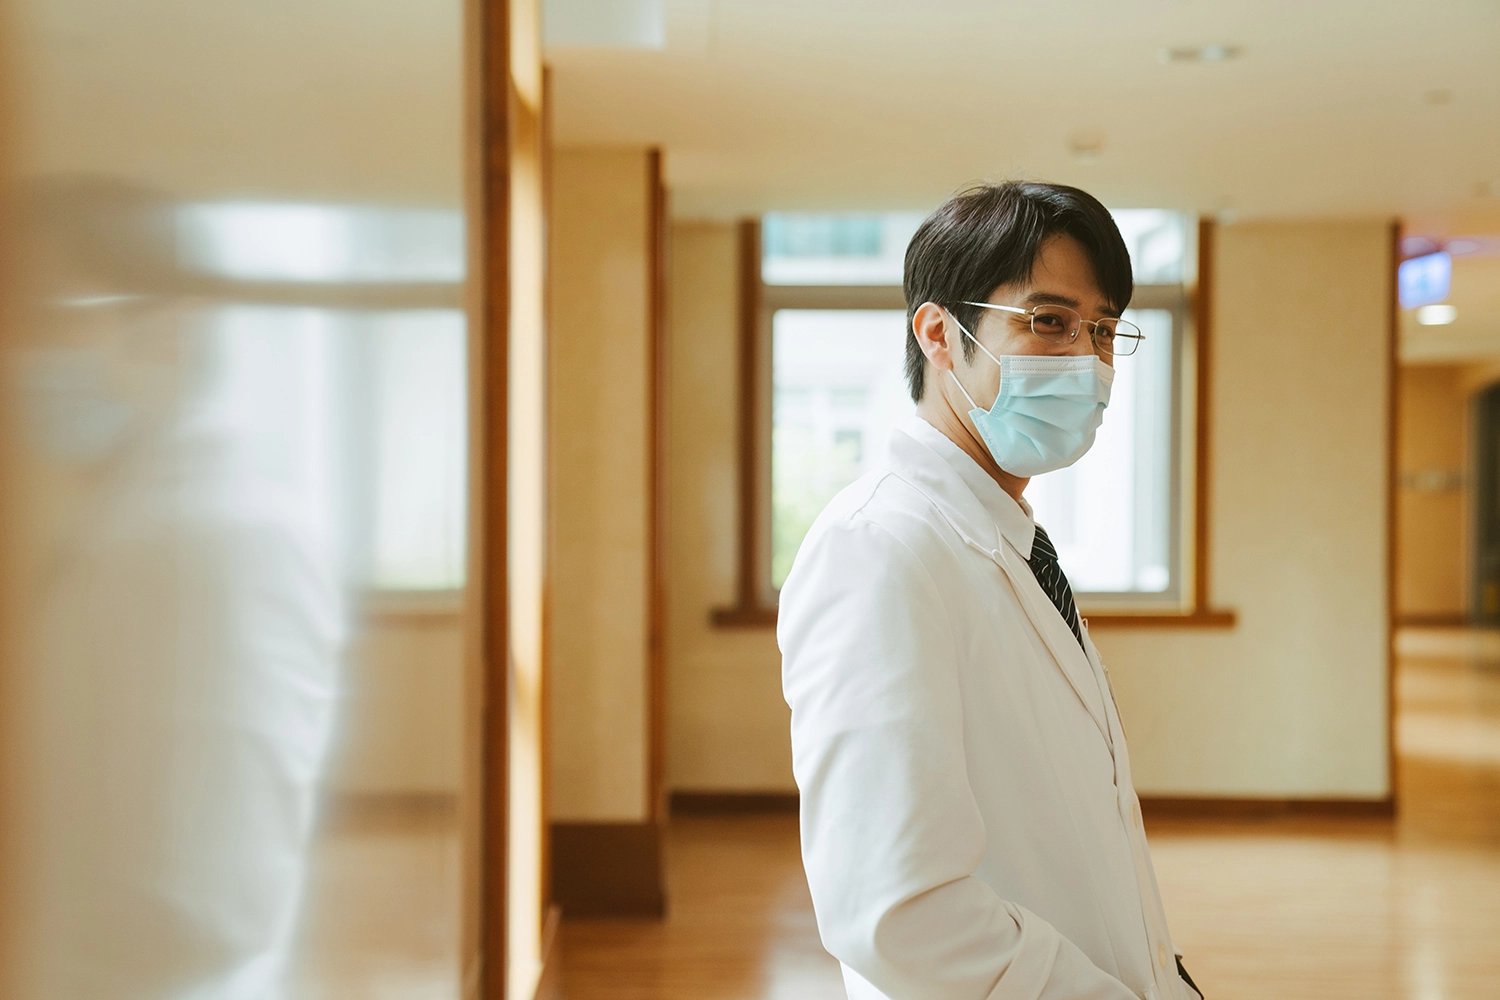 胡宇威飾演醫師，有感而發護理師一整天穿防護衣，不敢喝水也沒辦法上廁所，比醫師辛苦。